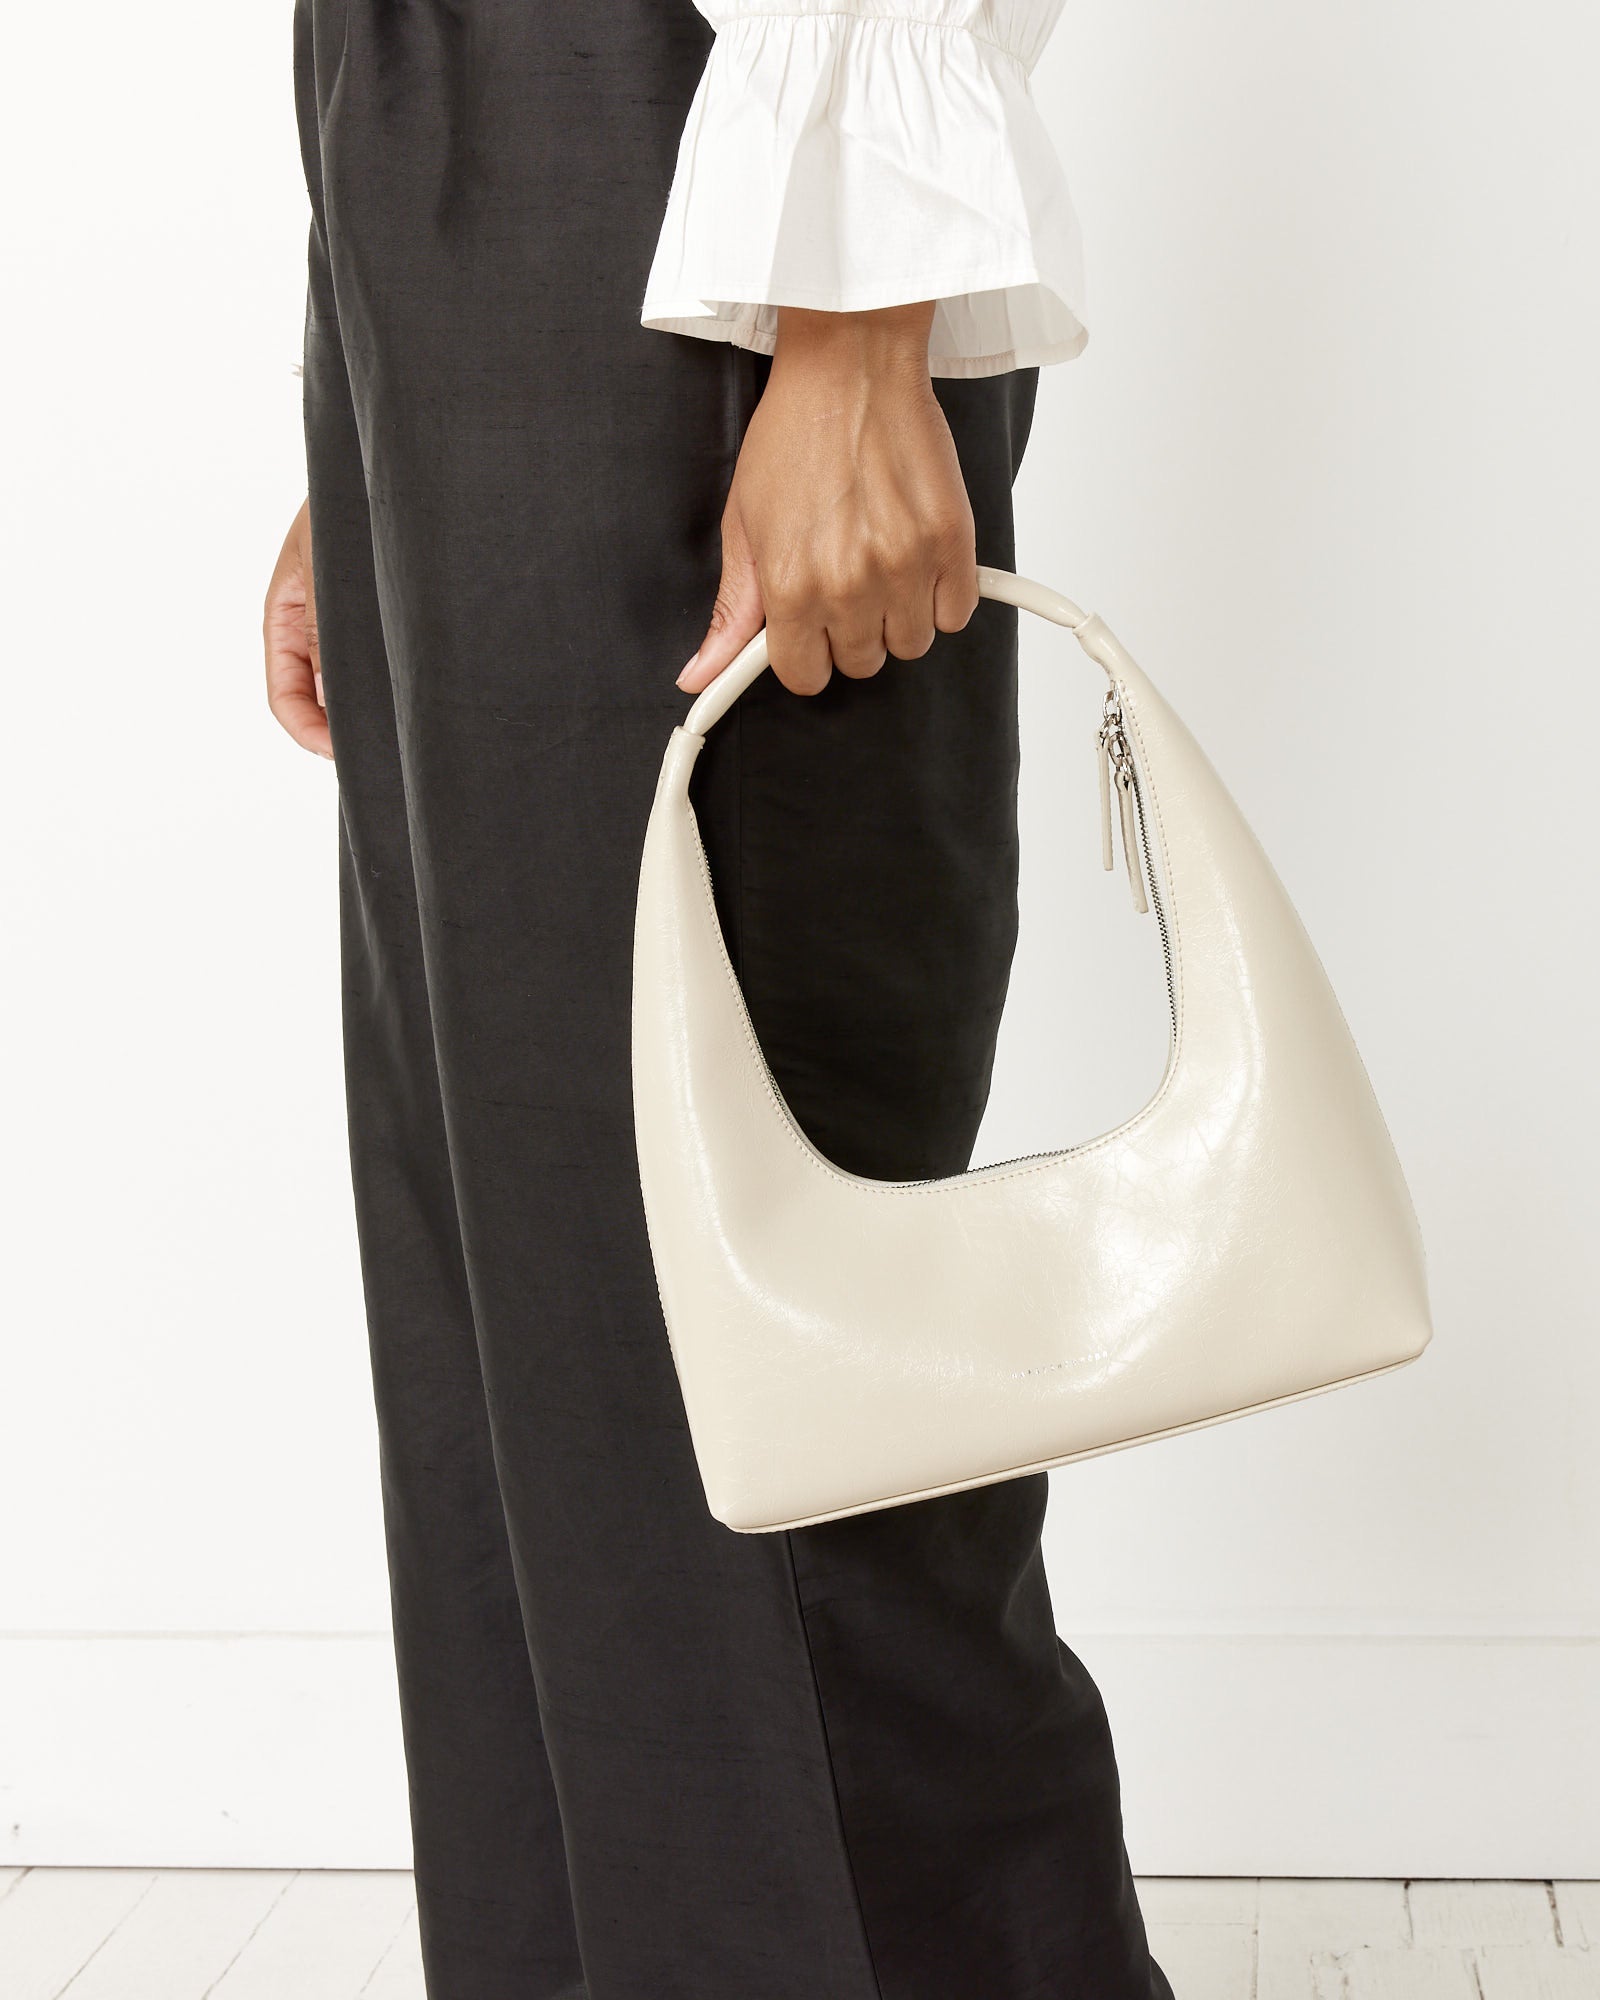 Marge Sherwood Hobo Mini Crinkled Leather Shoulder Bag for Women